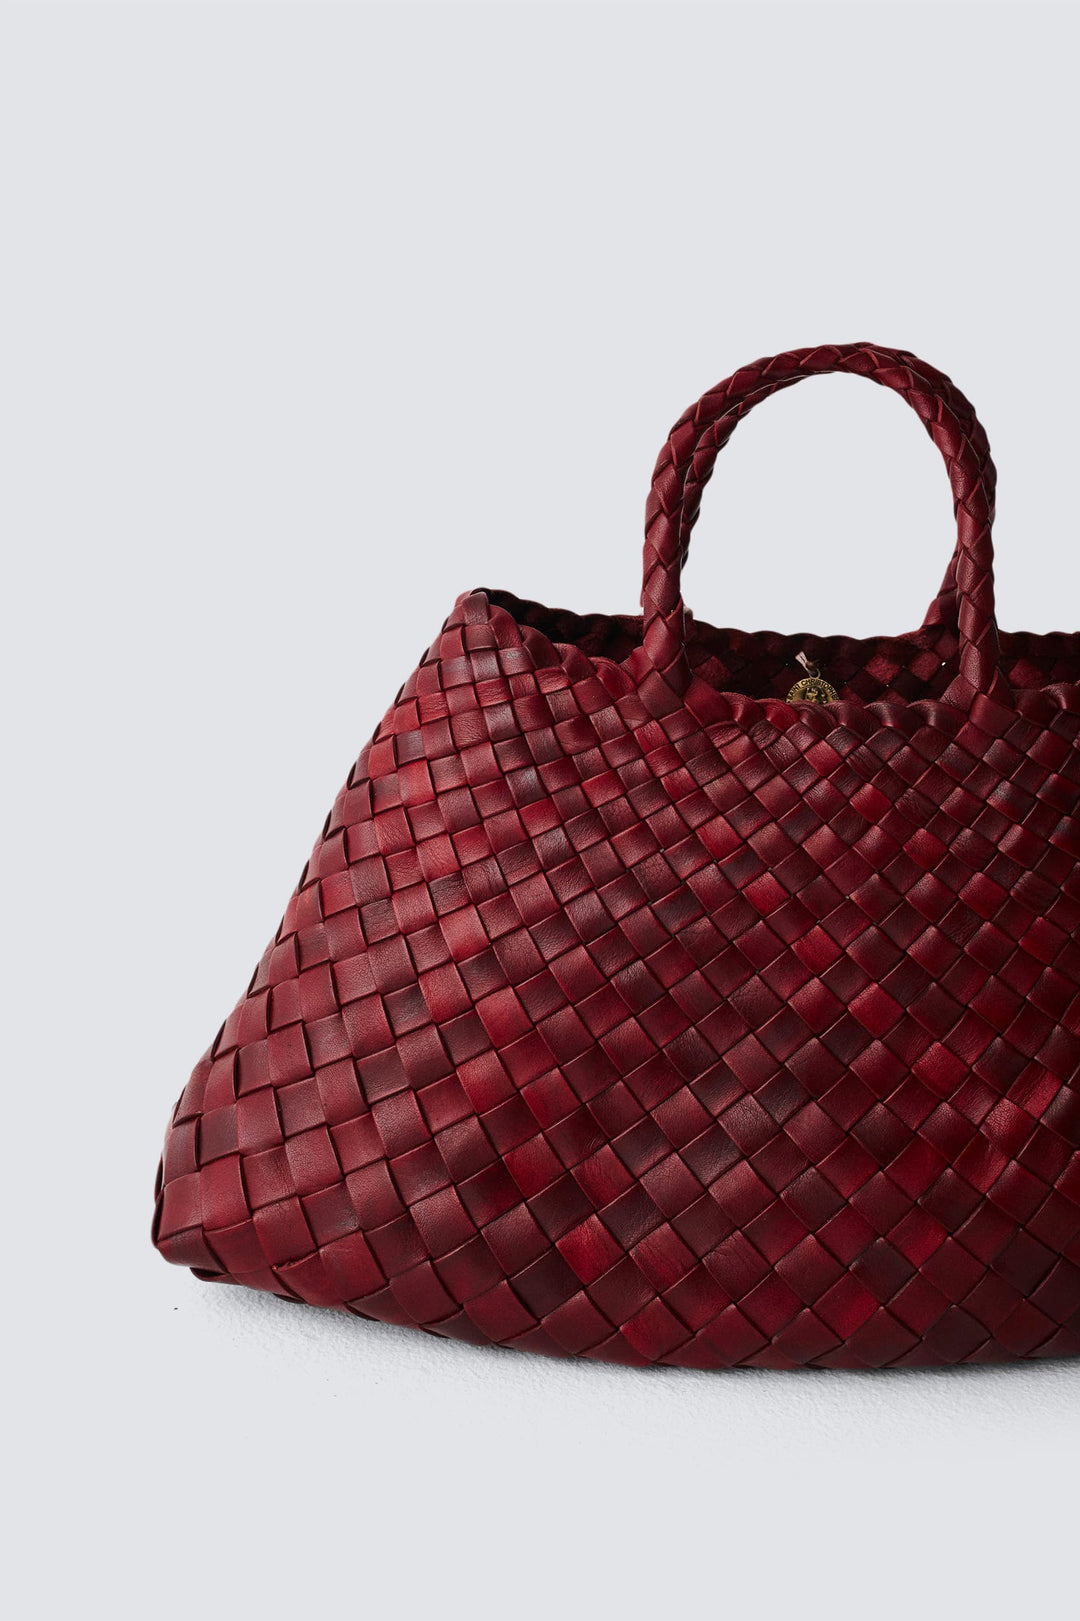 Dragon Diffusion - A4 Woven Leather Pochette Bordeaux